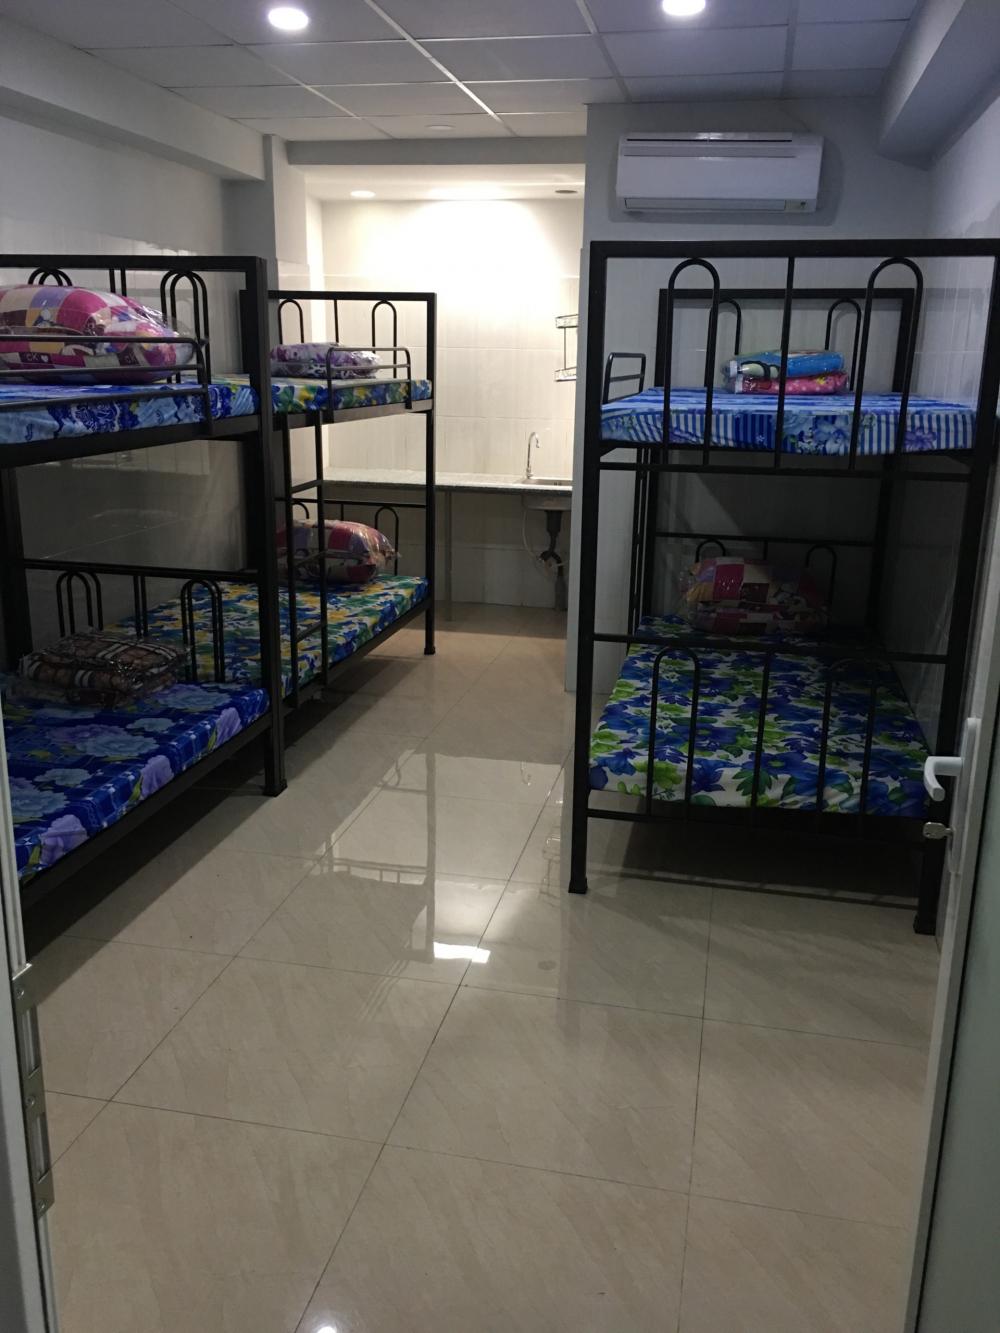 Phòng trọ mới an ninh cực rộng hiện đại giá rẻ dành cho công nhân,sinh viên chỉ 900k/giường